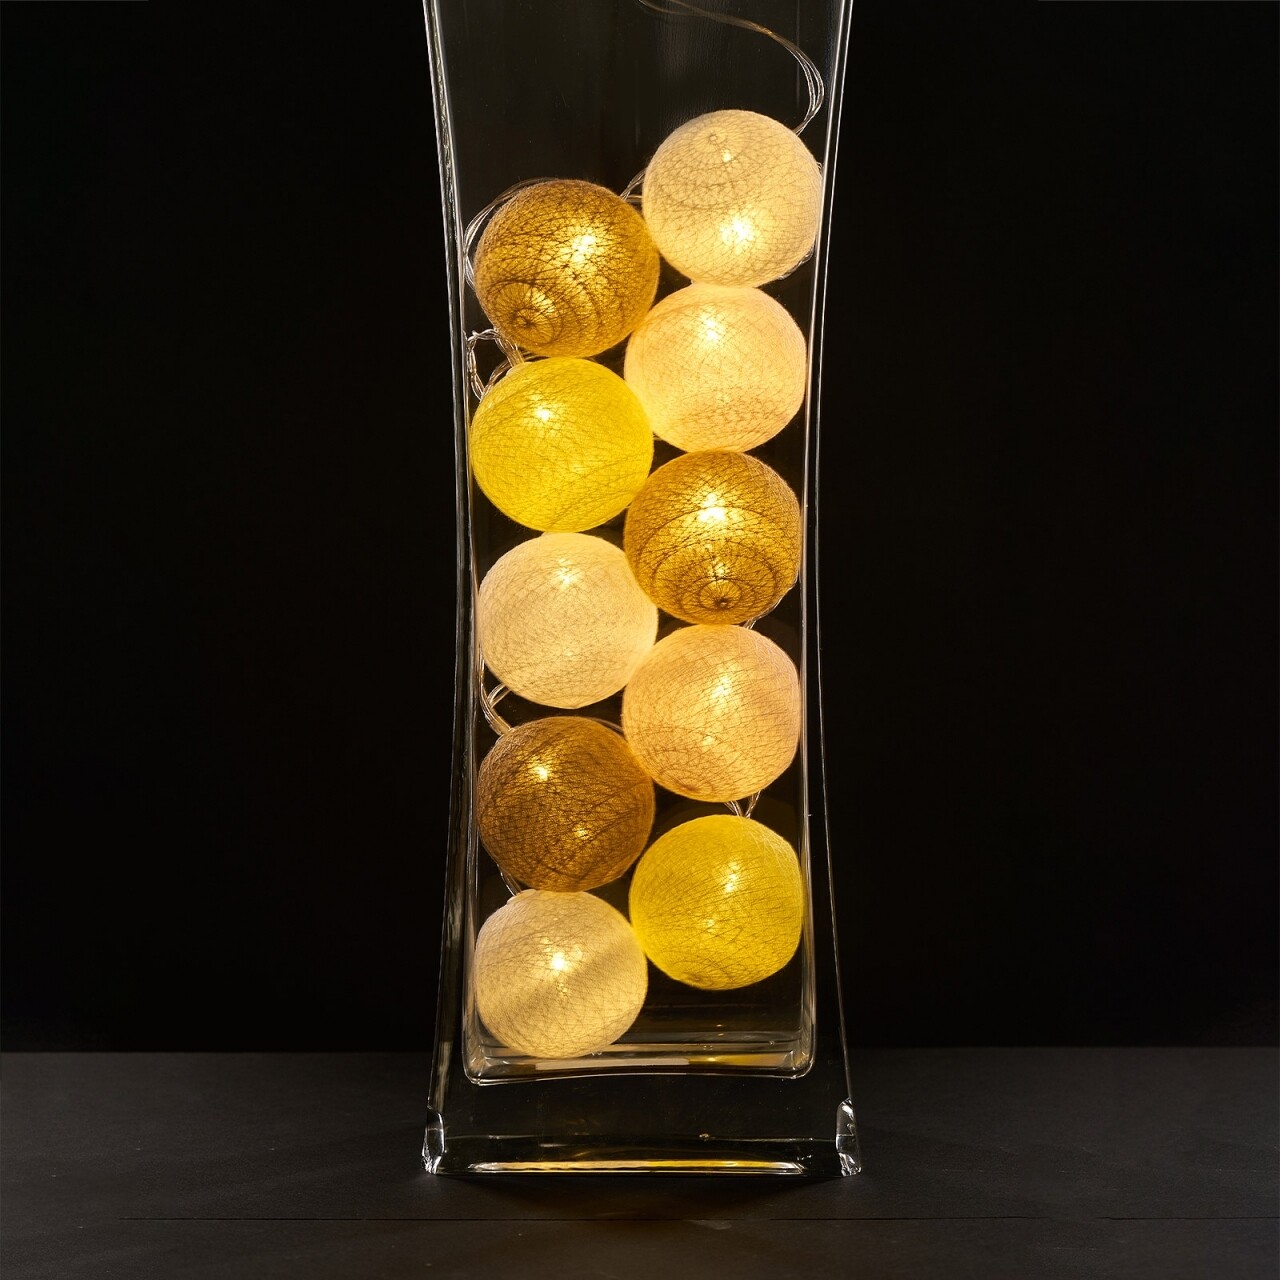 Yellow Fénydekoráció 10 LED-el, Heinner Home, 180 cm, műanyag, fehér/sárga